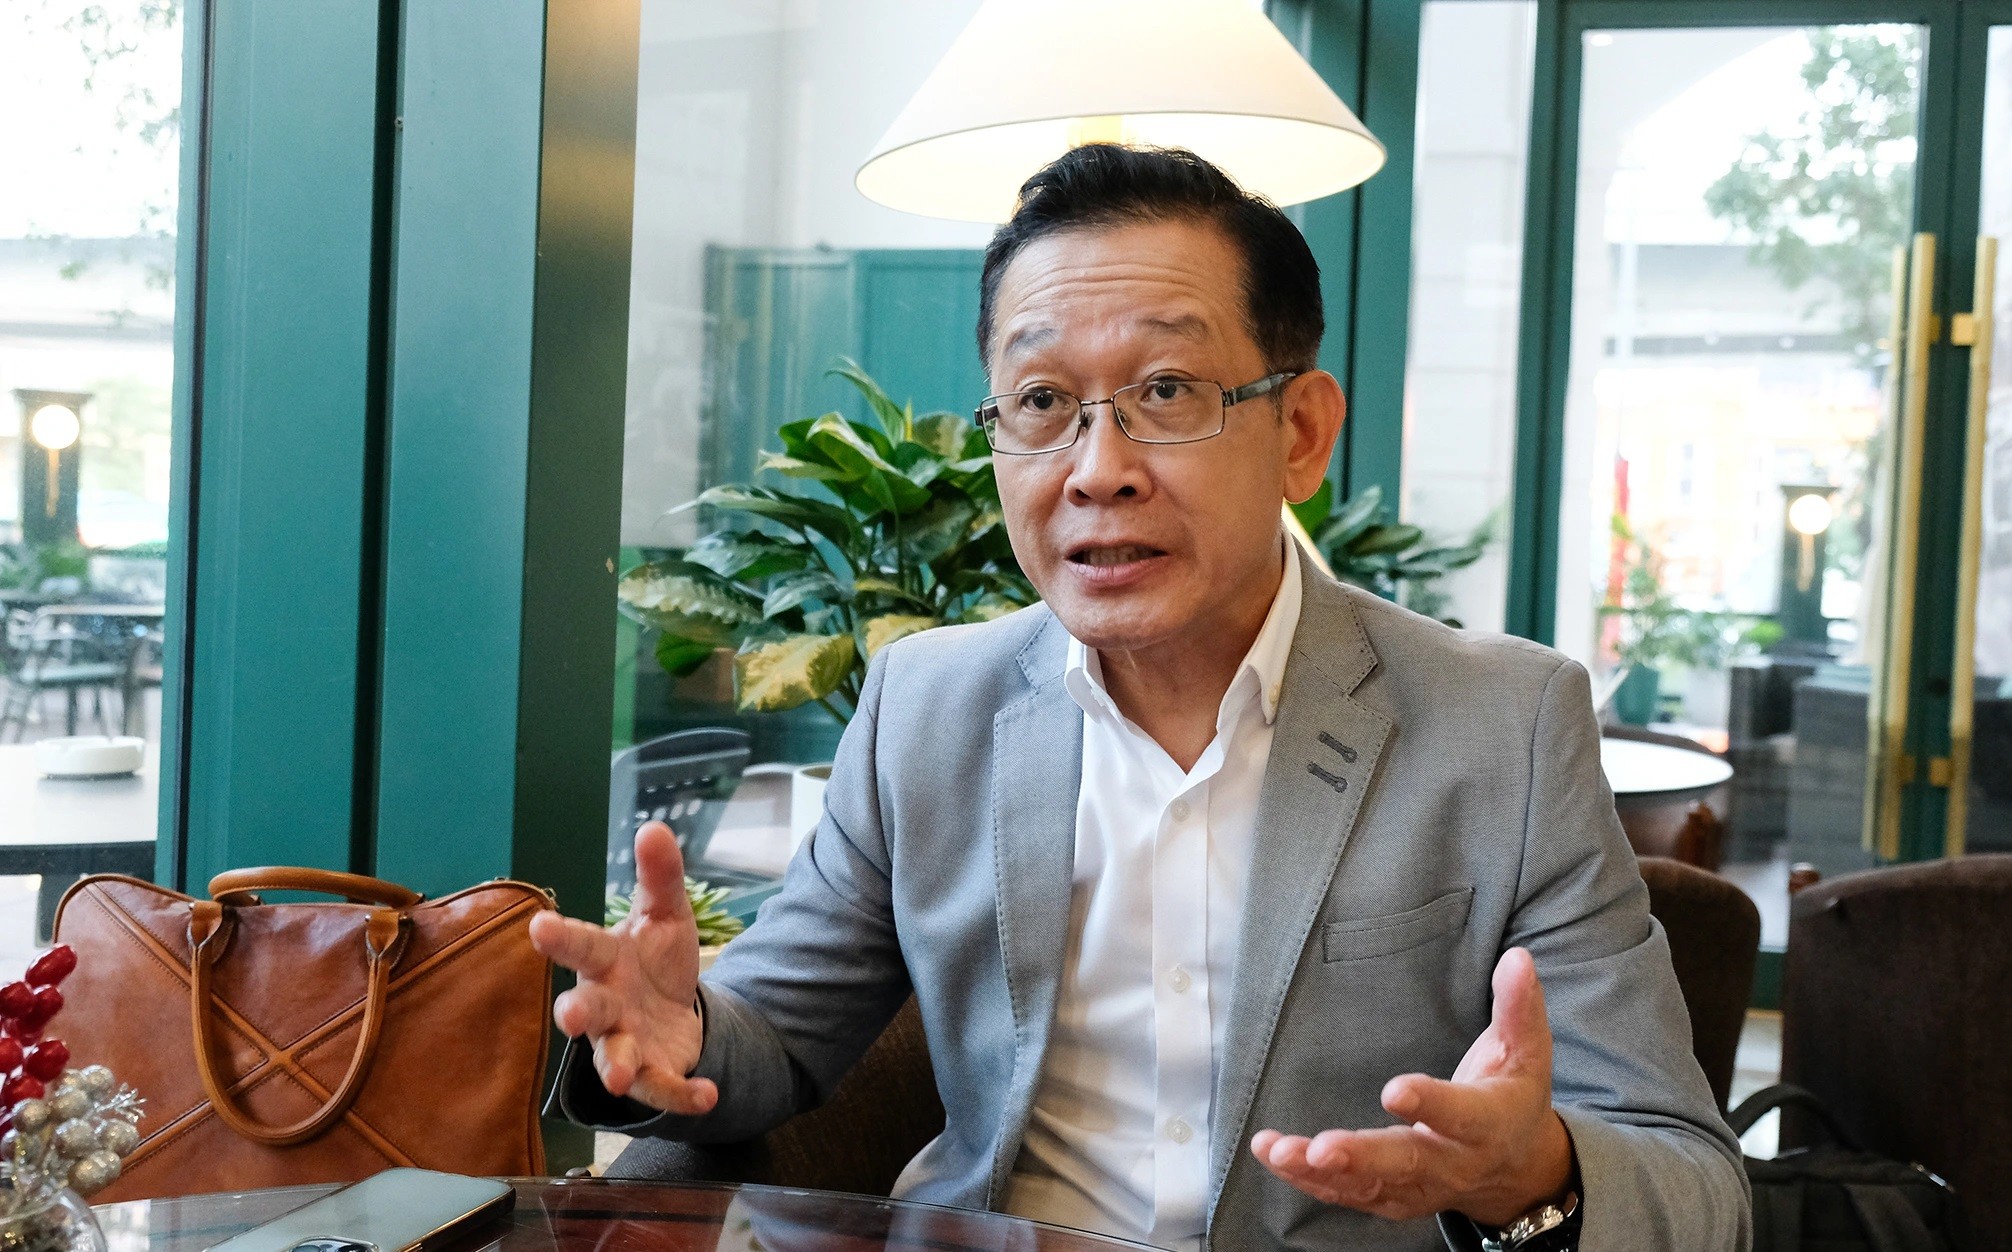 
Ông Hans Nguyễn từng quản lý danh mục đầu tư lên đến 5 tỷ USD ở Ngân hàng UBS của Thụy Sĩ
